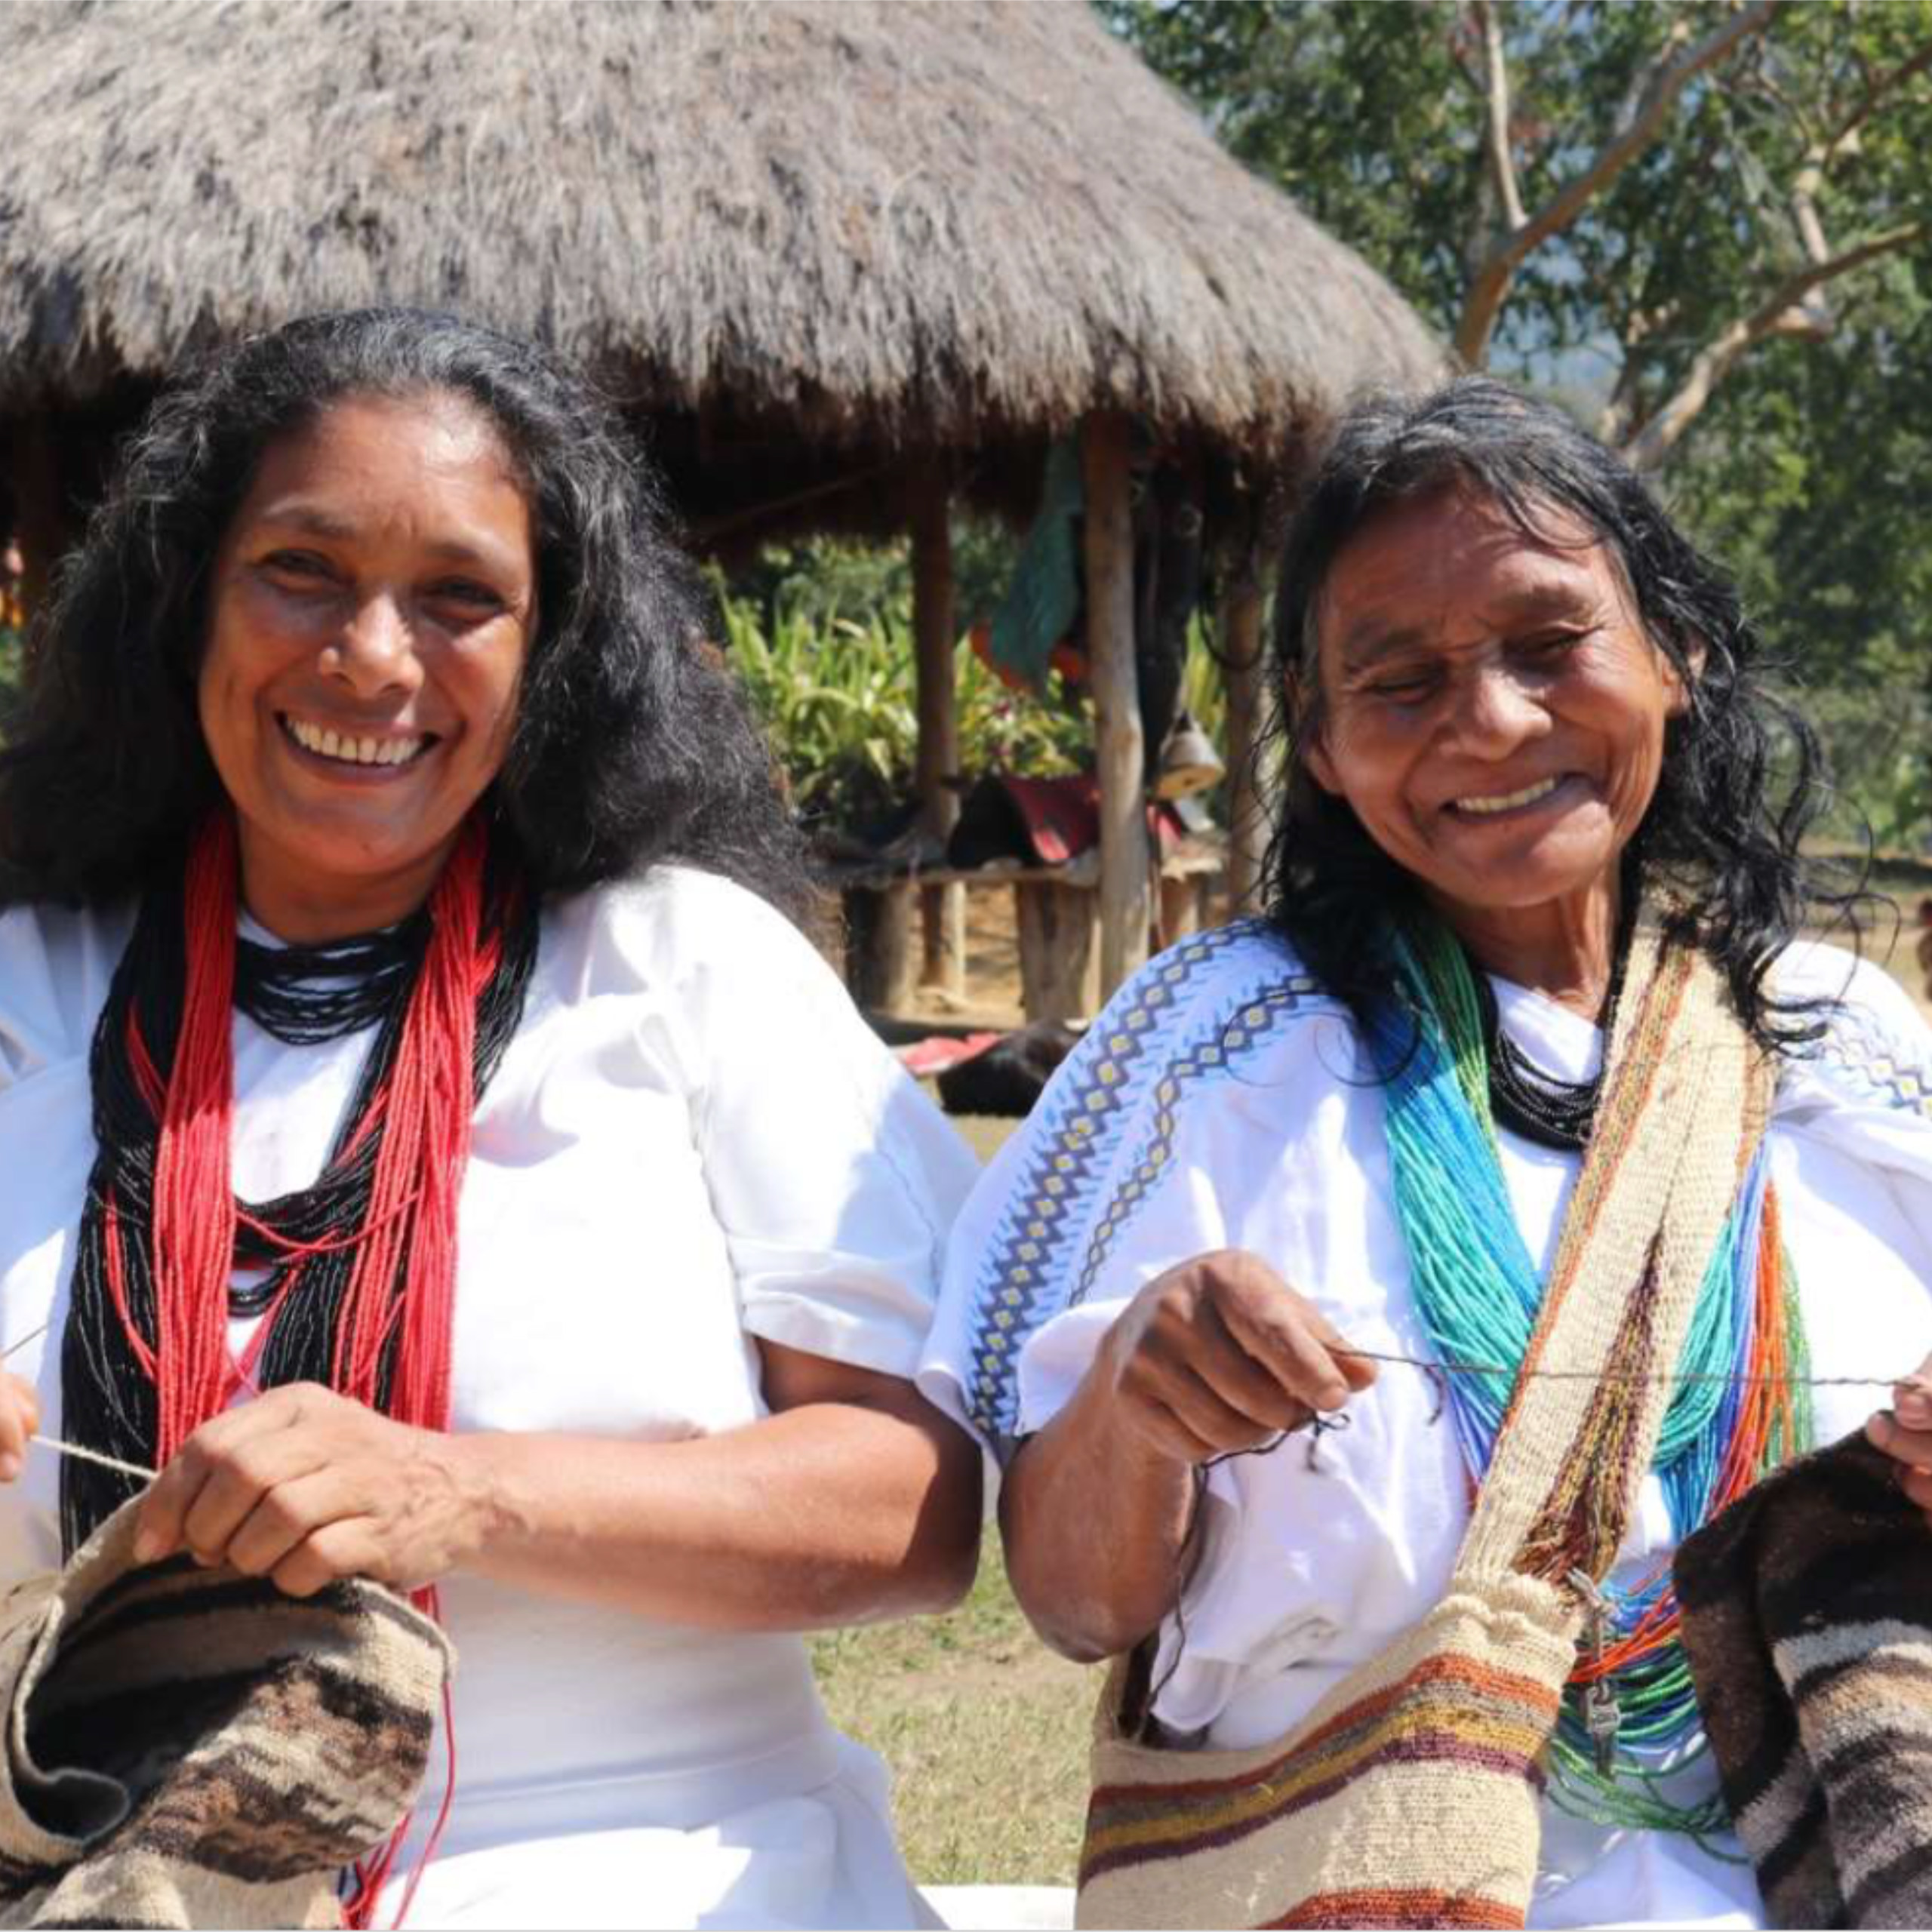 zwei indigene Arhuaca-Frauen bei ihrer Handarbeit